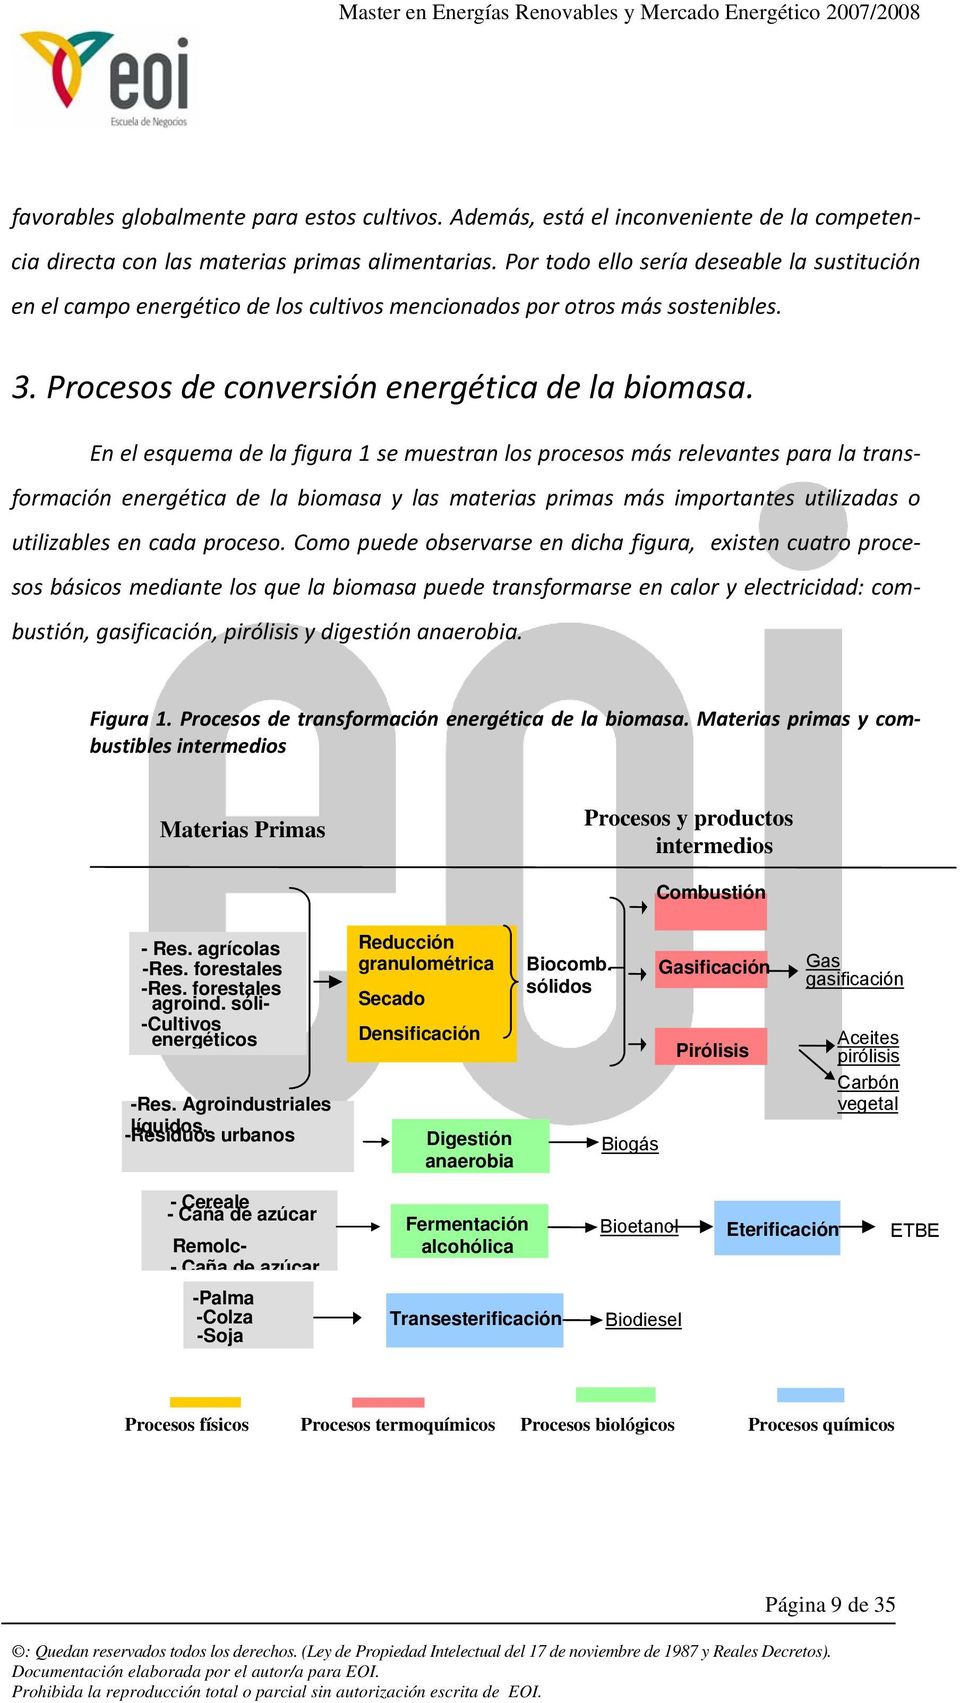 En el esquema de la figura 1 se muestran los procesos más relevantes para la transformación energética de la biomasa y las materias primas más importantes utilizadas o utilizables en cada proceso.